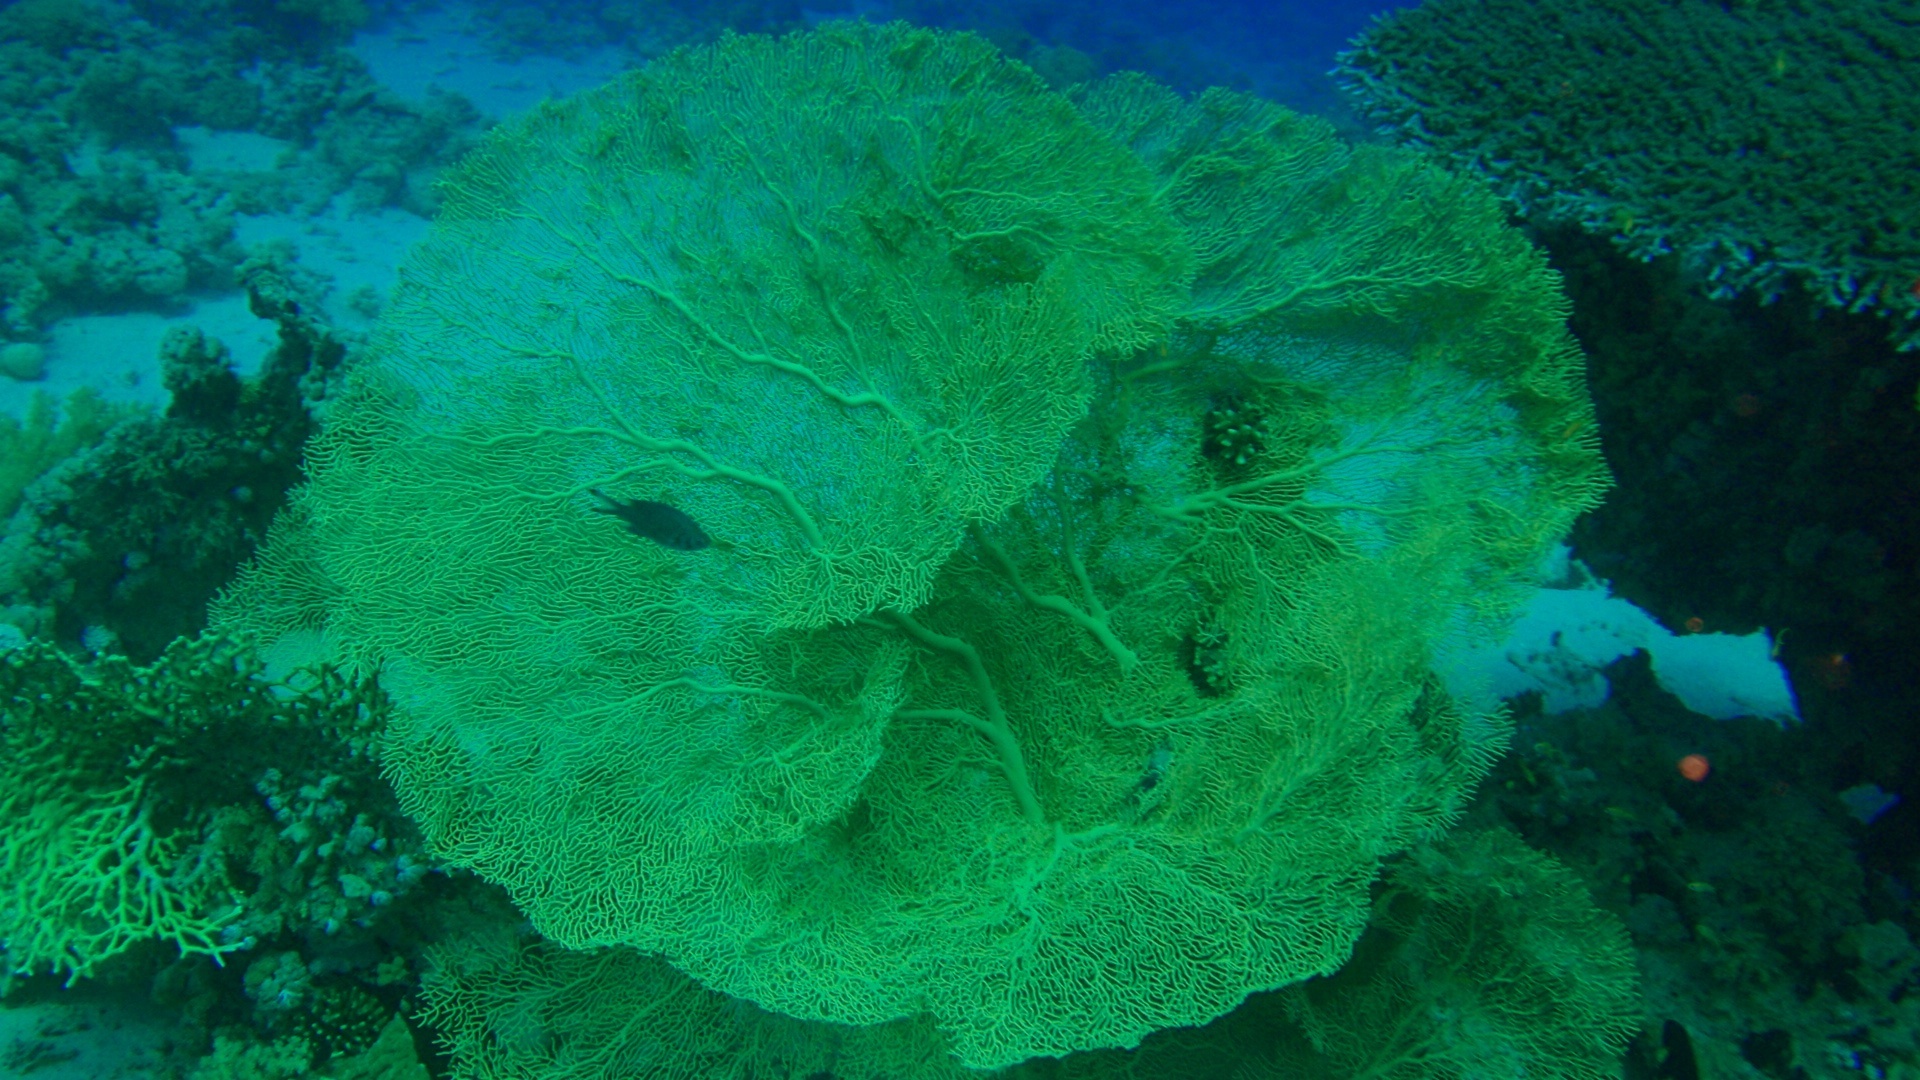 Gorgonian fan coral 1.jpg